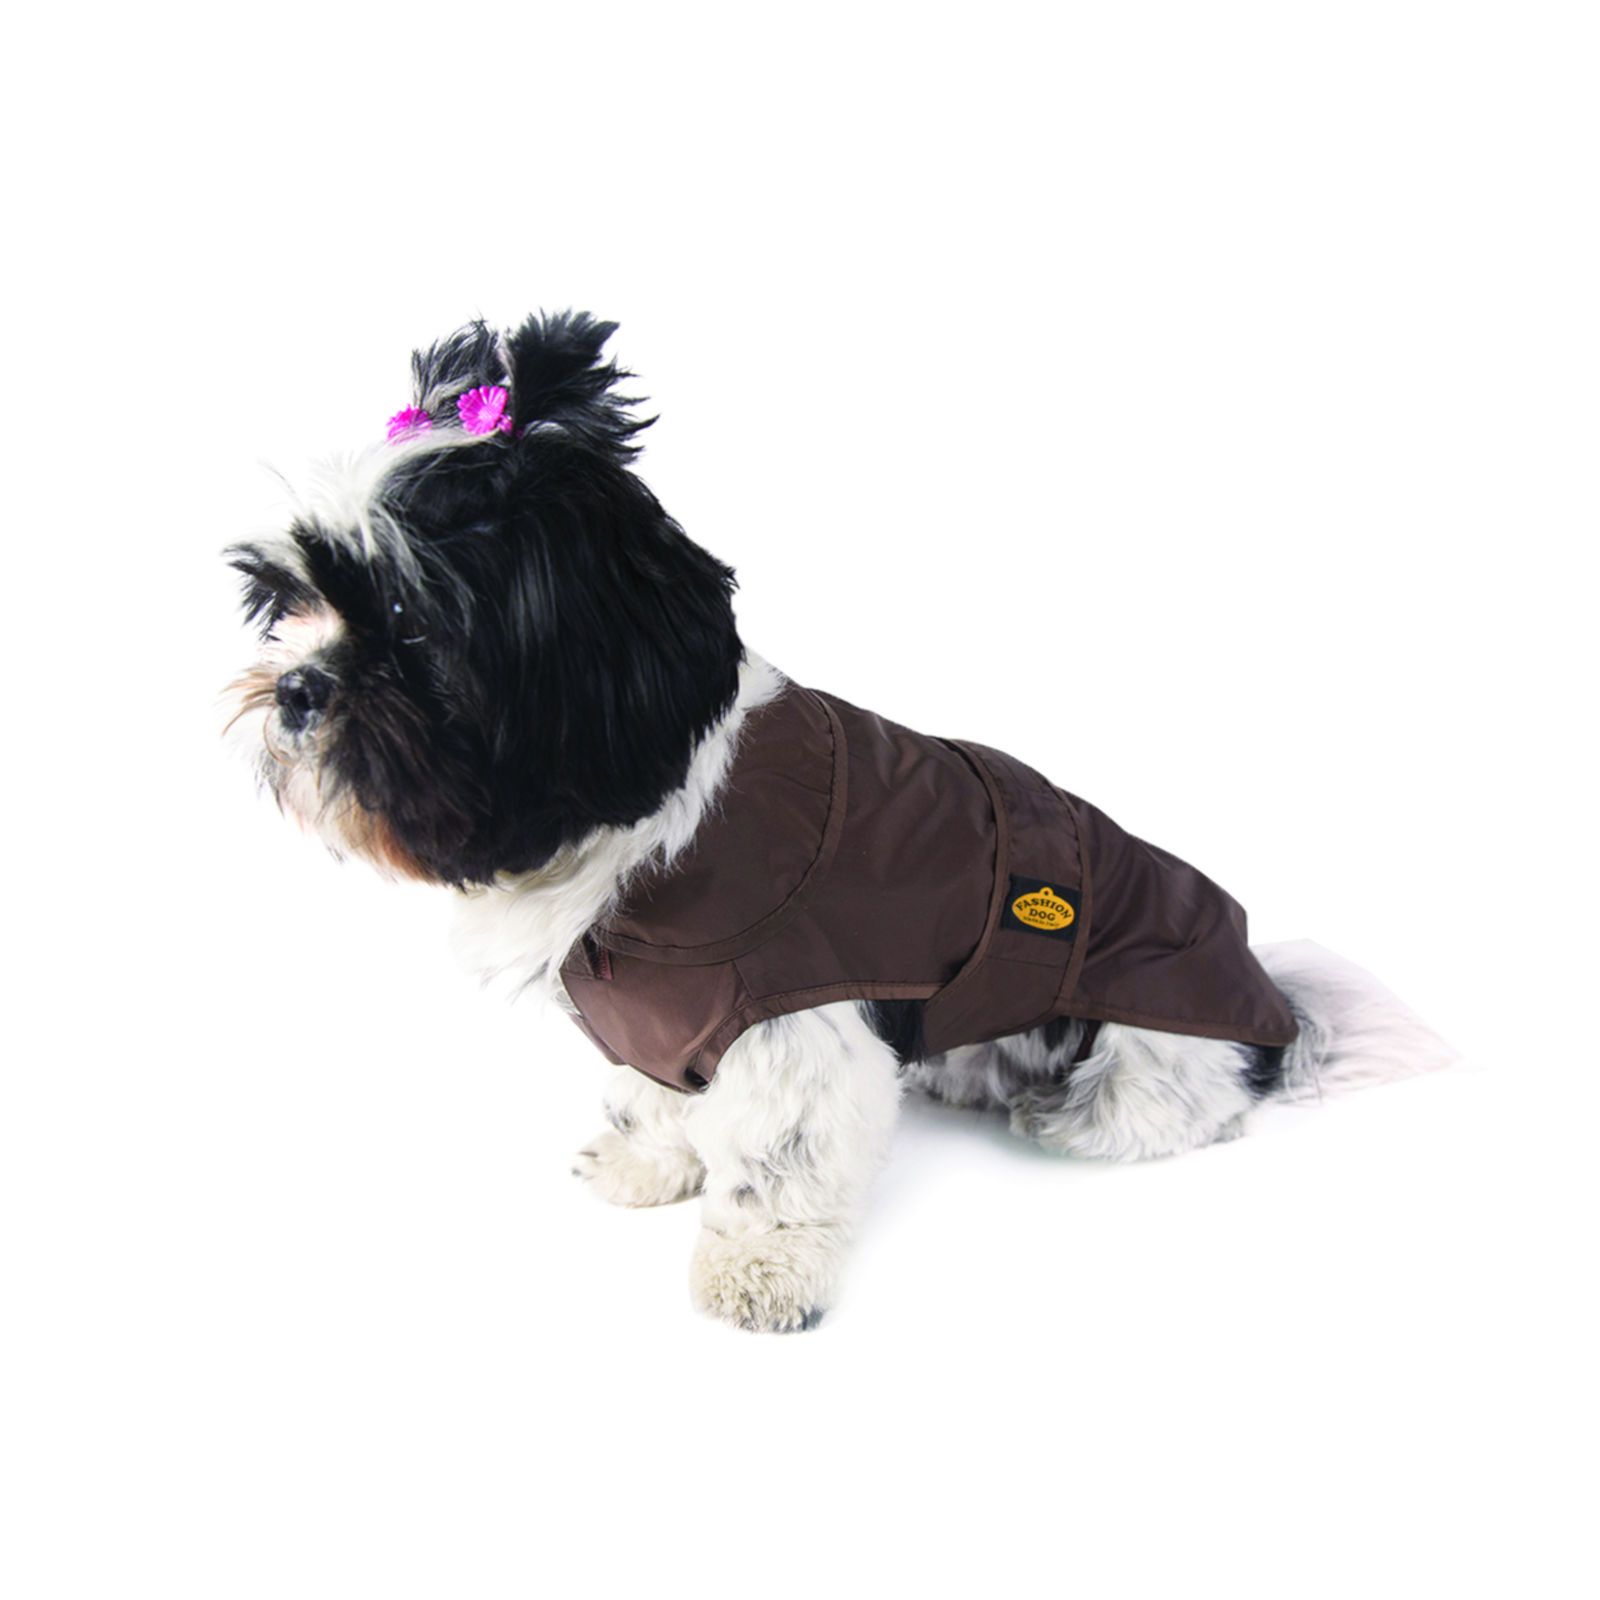 Fashion Dog Regenmantel für Hunde - Braun - 55 cm